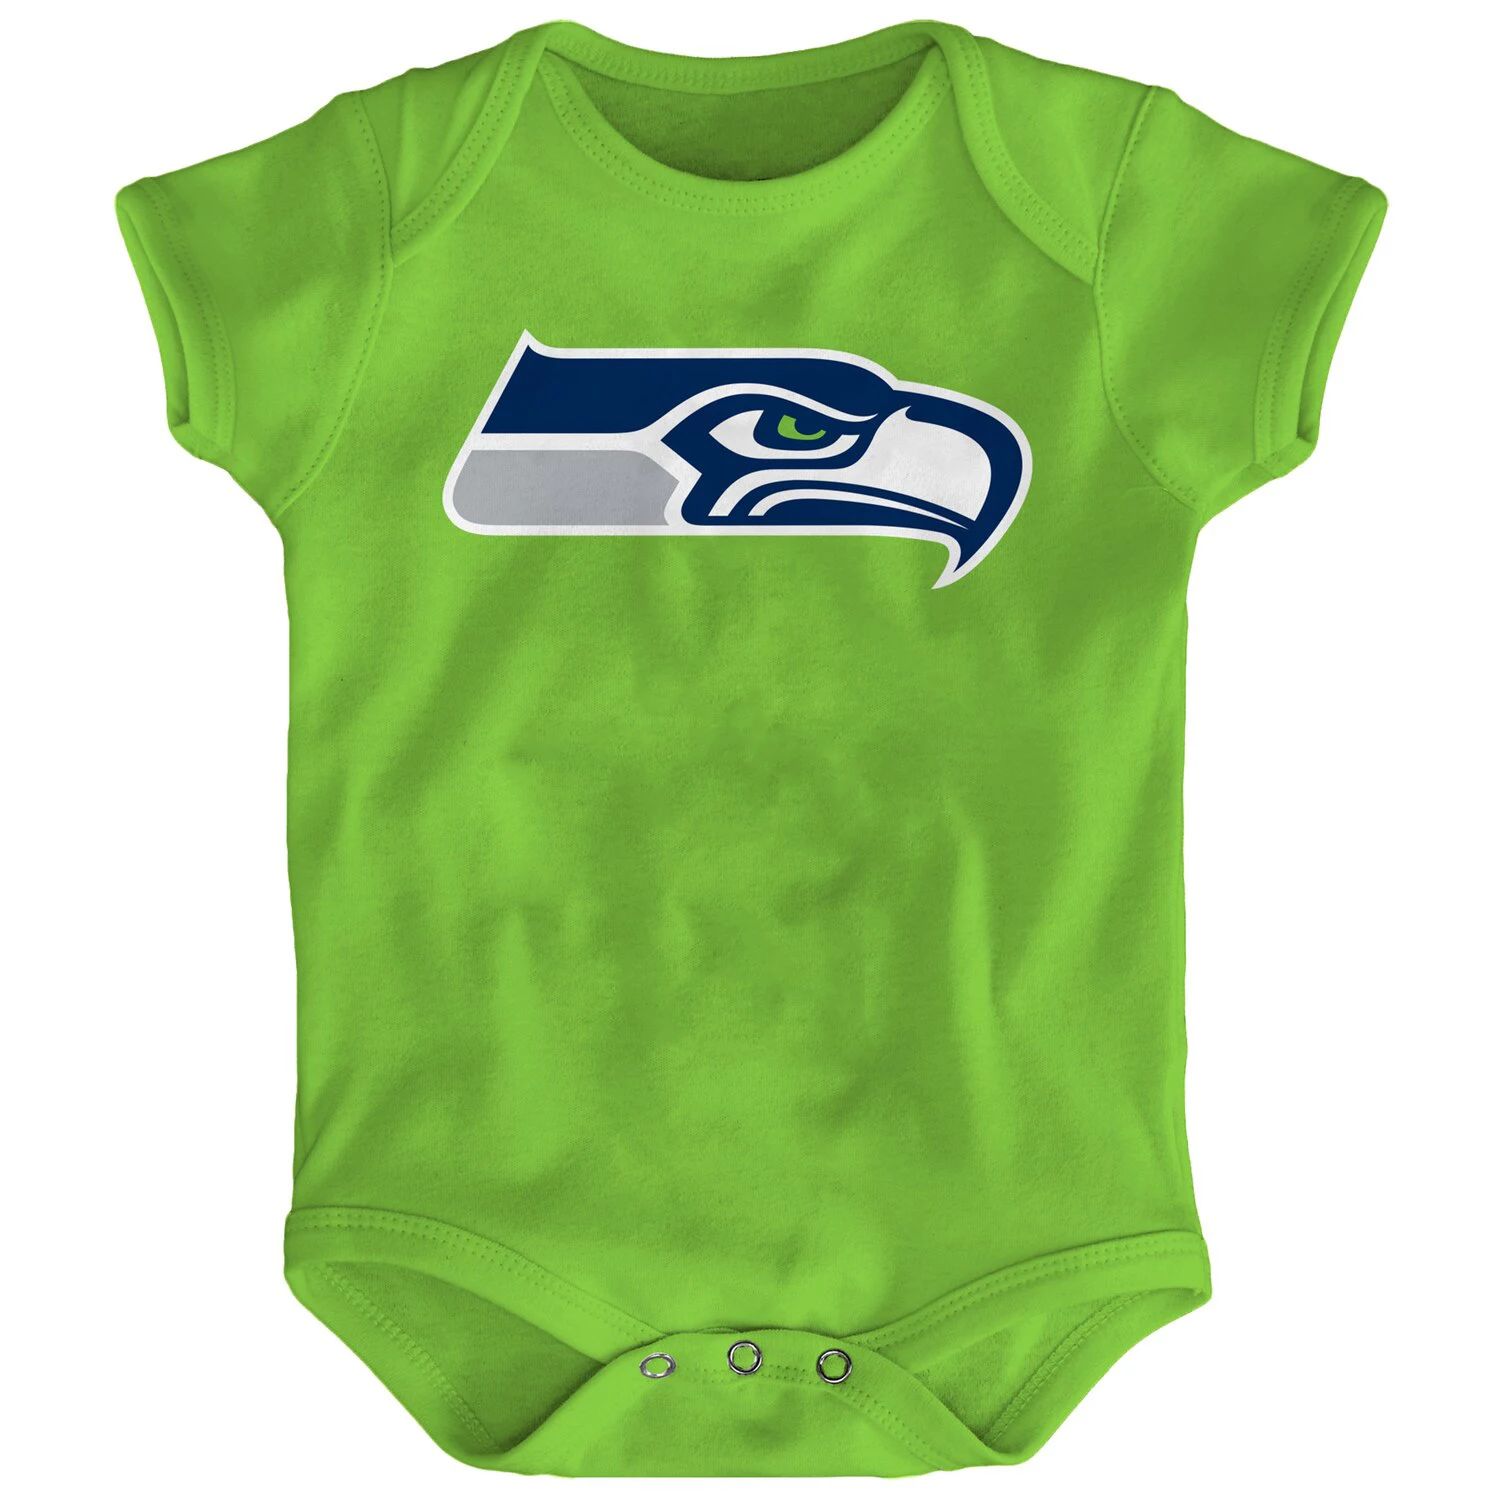 Неоново-зеленое боди для новорожденных с логотипом команды Seattle Seahawks Outerstuff